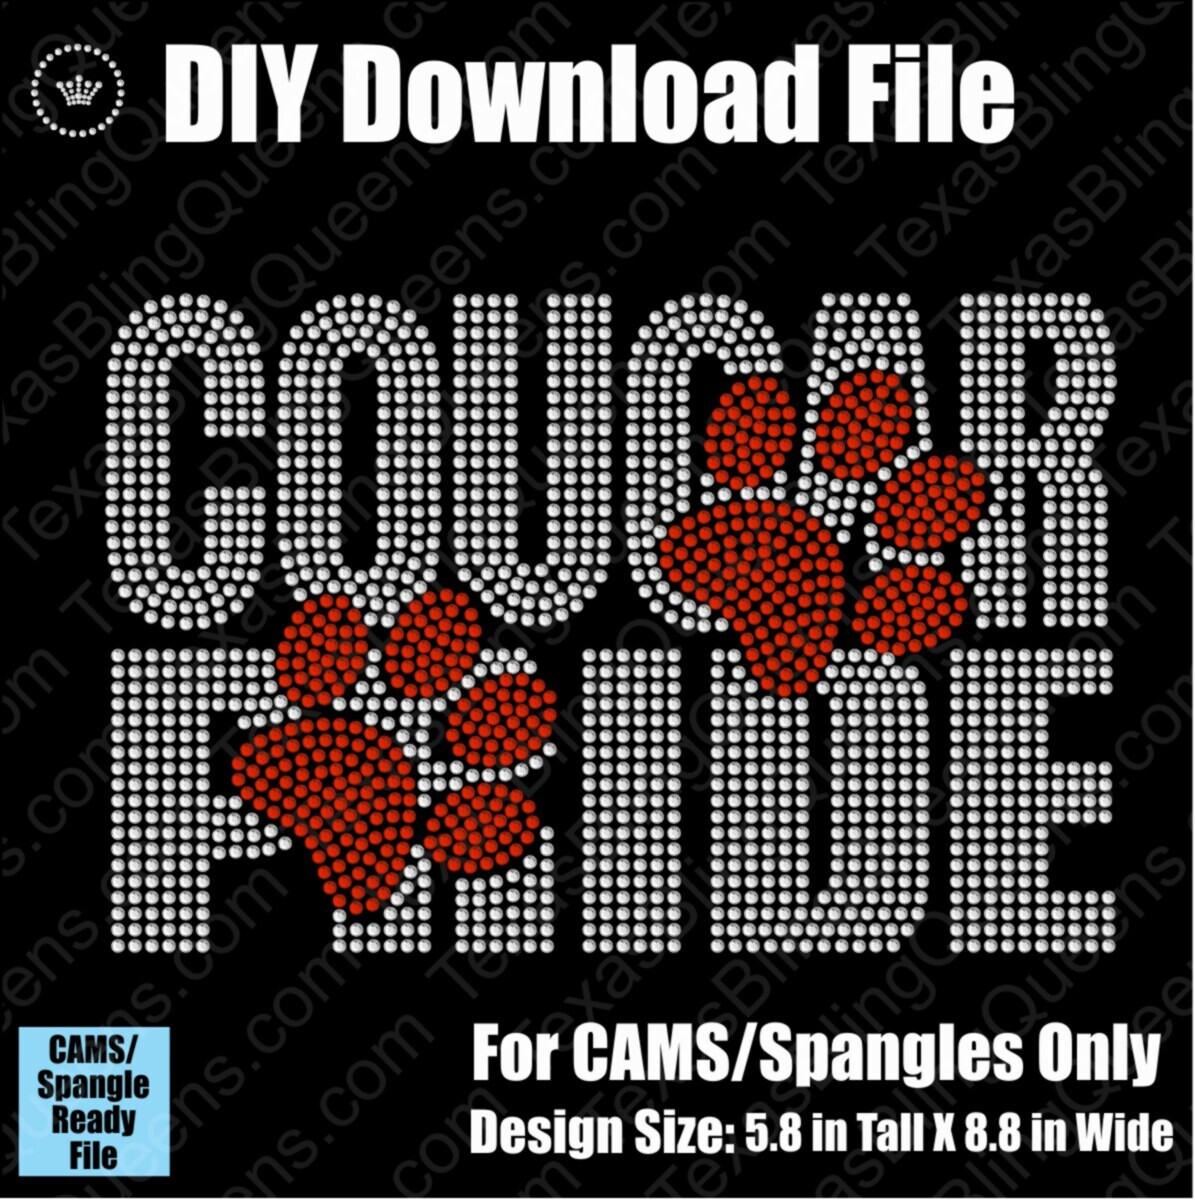 Cougar Pride Mascot Download File - CAMS/ProSpangle